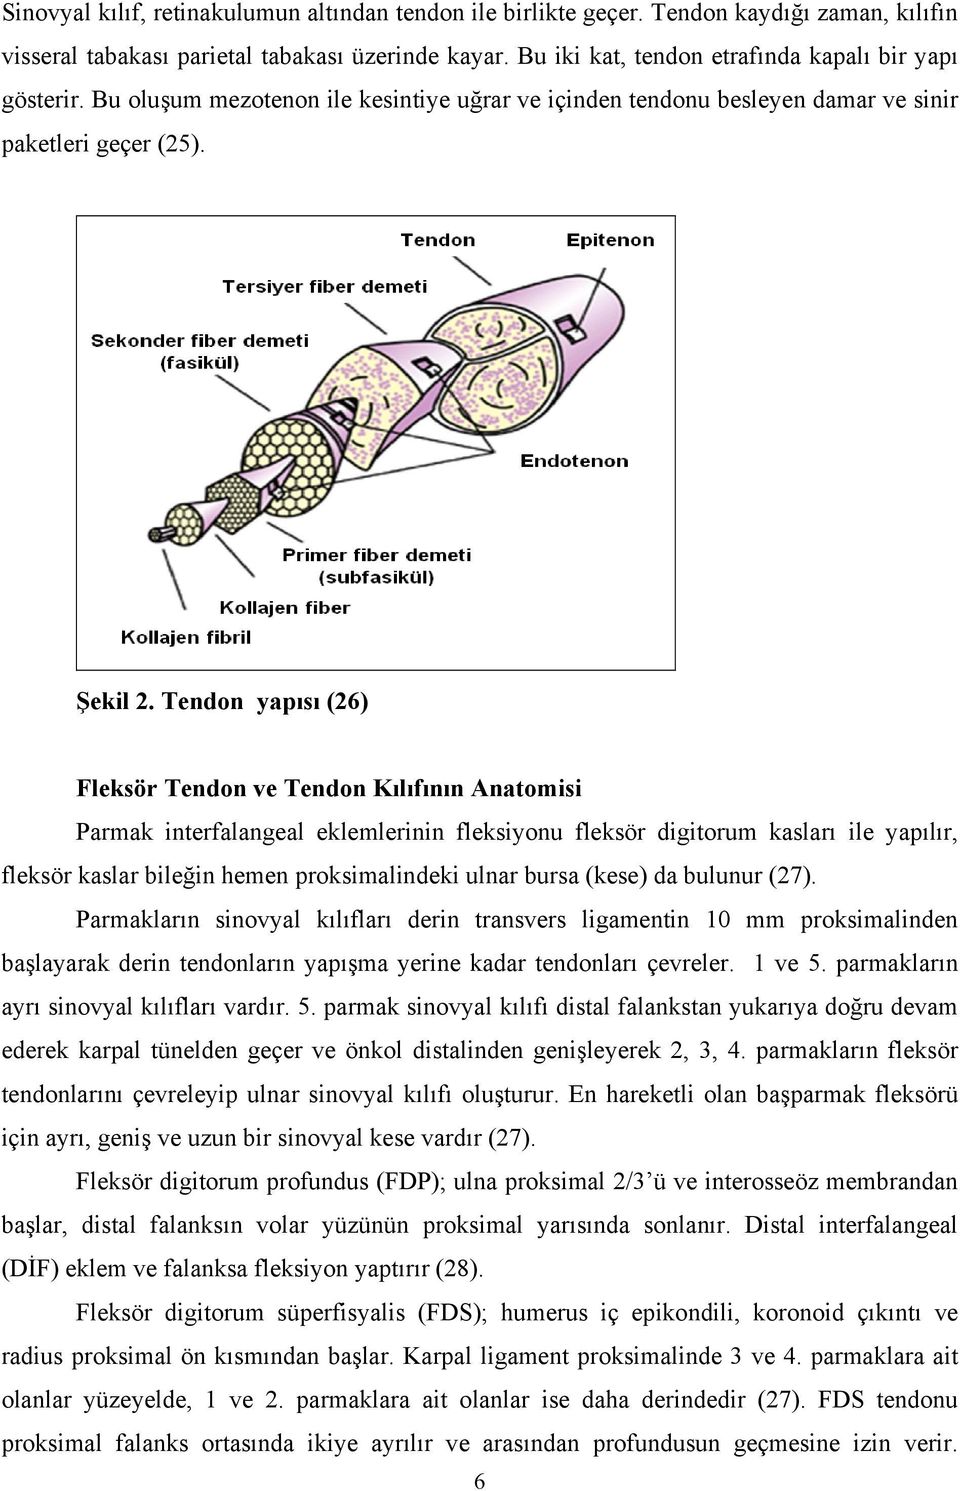 Tendon yapısı (26) Fleksör Tendon ve Tendon Kılıfının Anatomisi Parmak interfalangeal eklemlerinin fleksiyonu fleksör digitorum kasları ile yapılır, fleksör kaslar bileğin hemen proksimalindeki ulnar